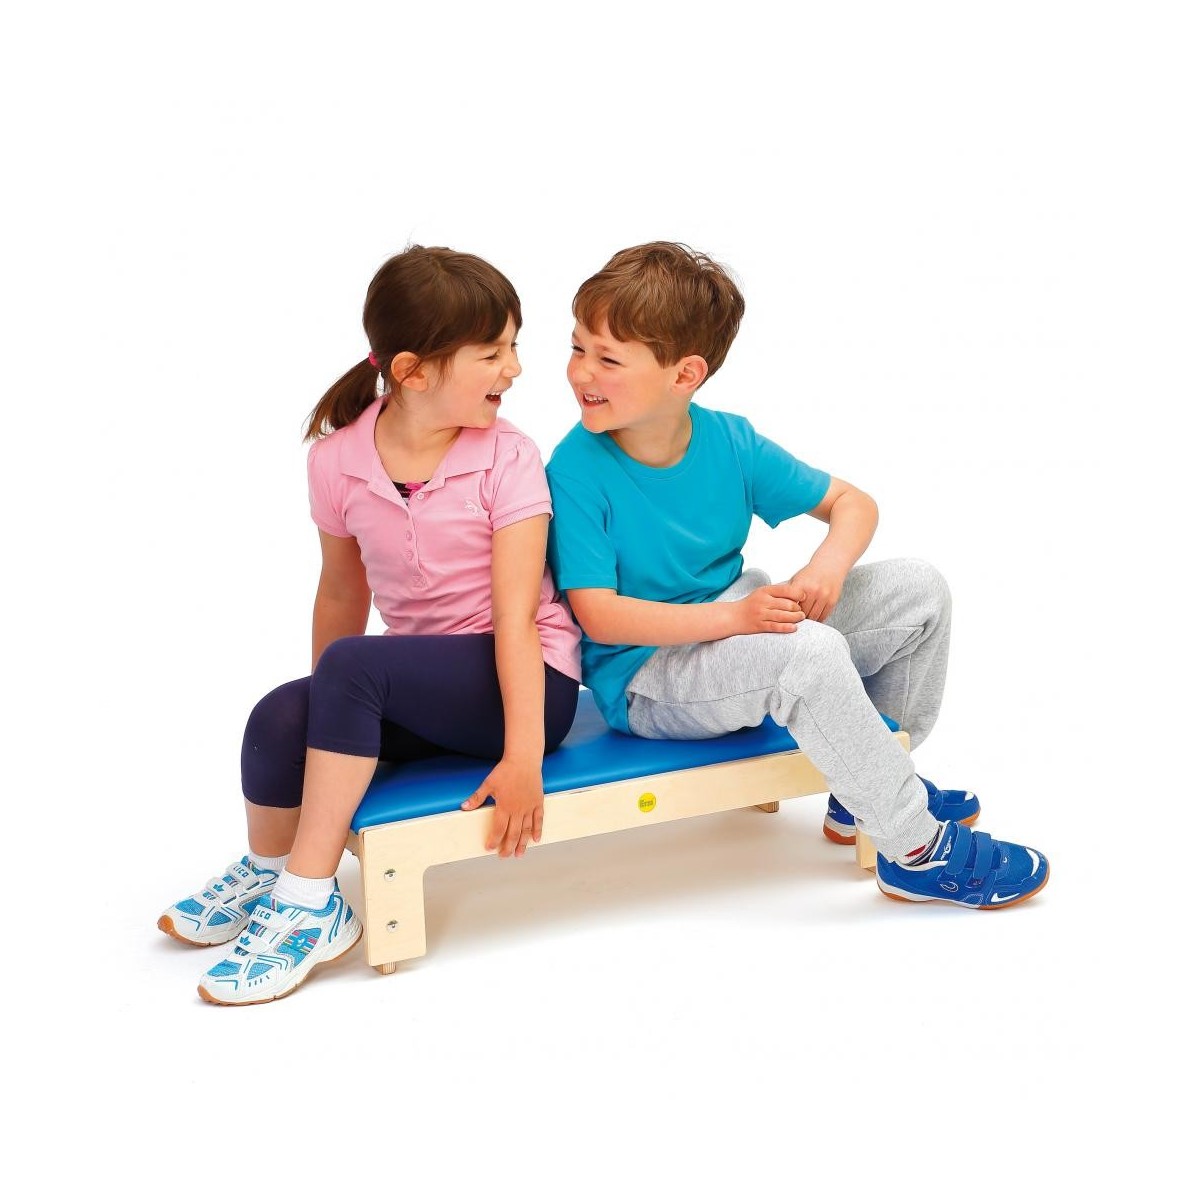 Sportbox rectangulaire Erzi avec top pour enfants - 4